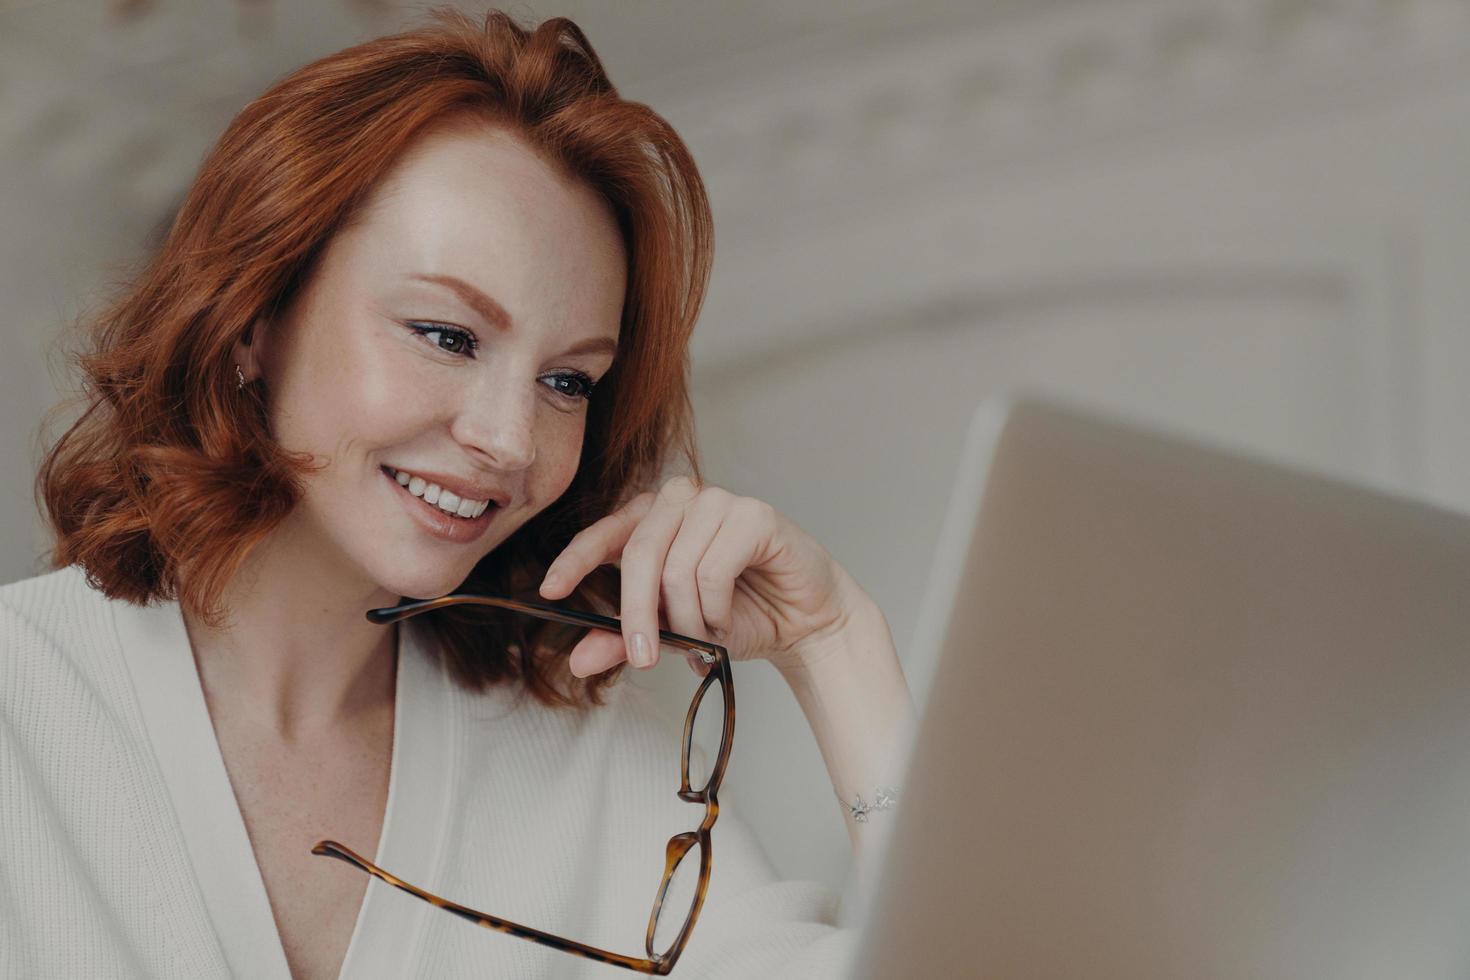 professionell leende ingefära kvinnlig webbdesigner använder applikation på bärbar dator för att skapa projektarbete, gör onlineforskning och surfar på internet, håller glasögon, har ett glatt uttryck foto